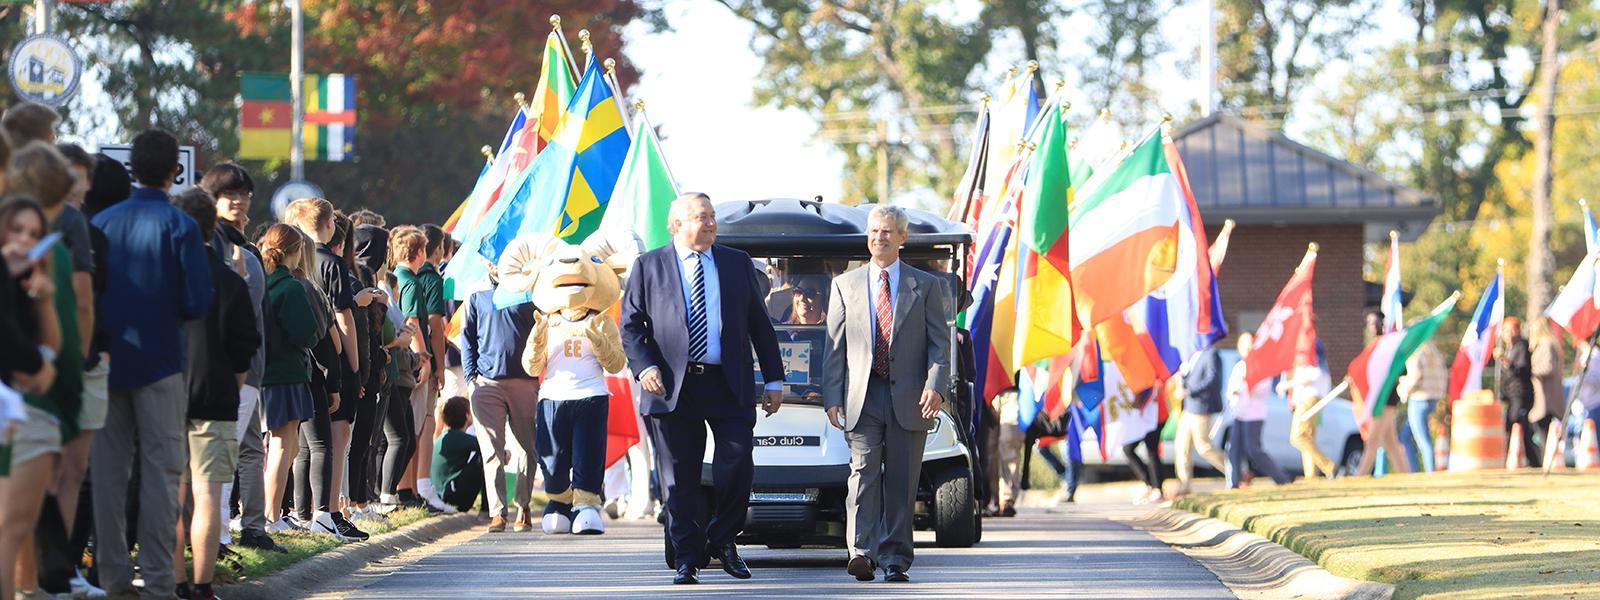 总理博士. 比尔·琼斯(左)和琼斯总统. 标志着. 史密斯在国际大道上领着升旗队伍. 